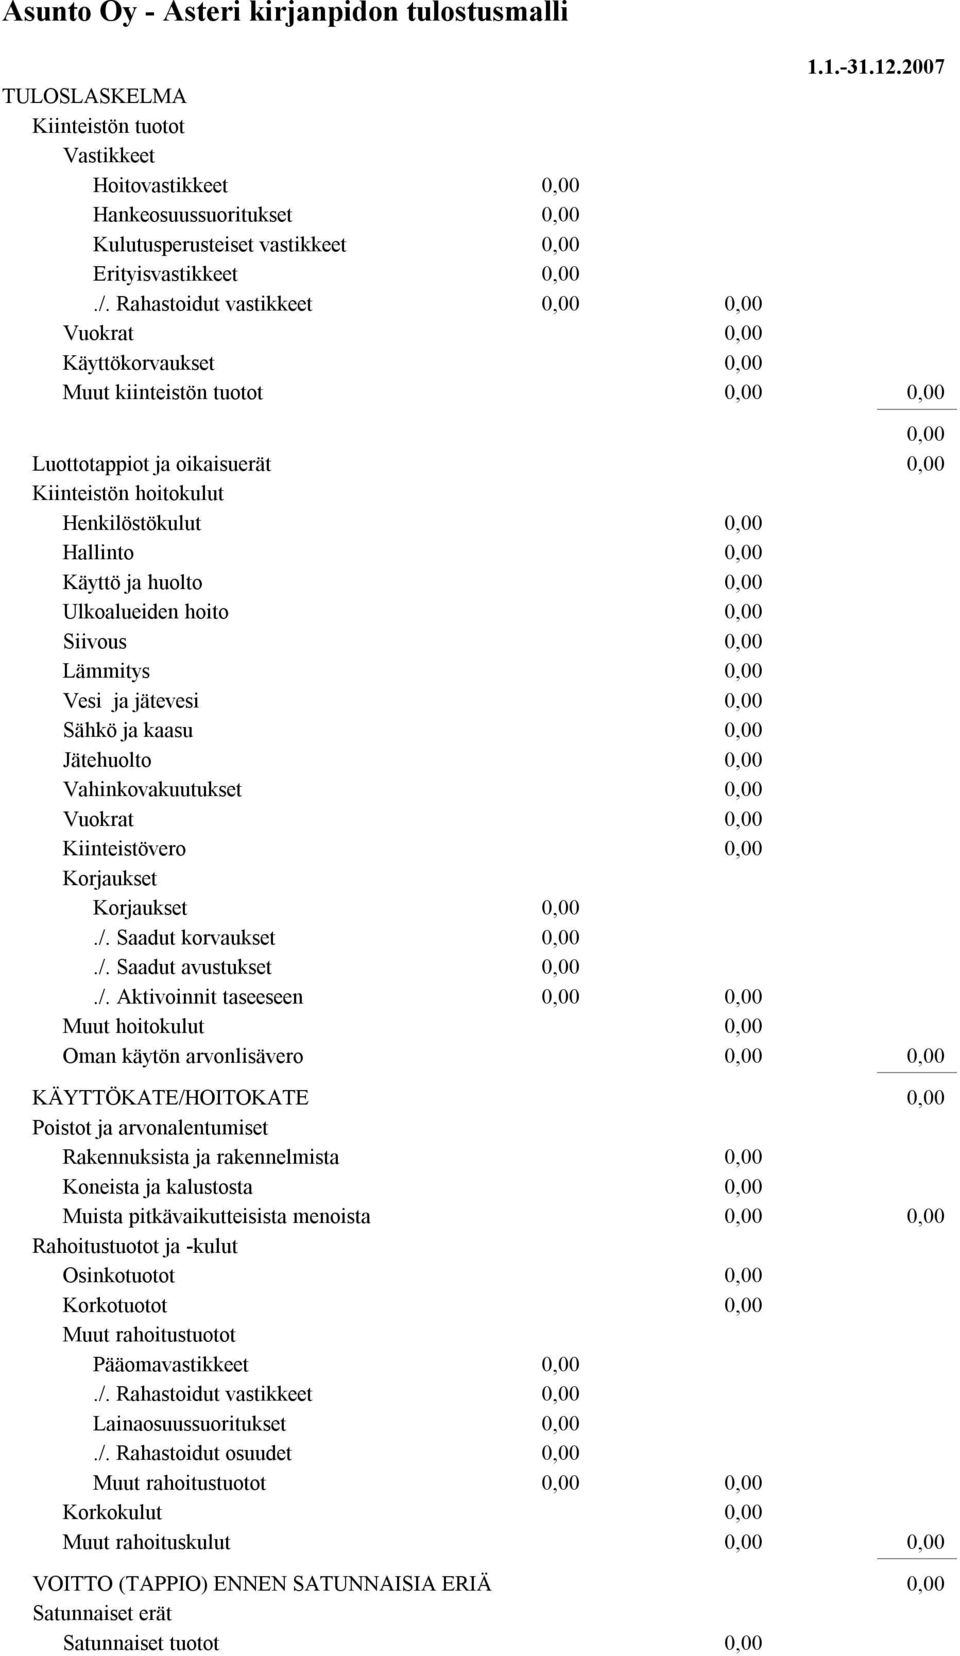 Lämmitys Vesi ja jätevesi Sähkö ja kaasu Jätehuolto Vahinkovakuutukset Vuokrat Kiinteistövero Korjaukset Korjaukset./.